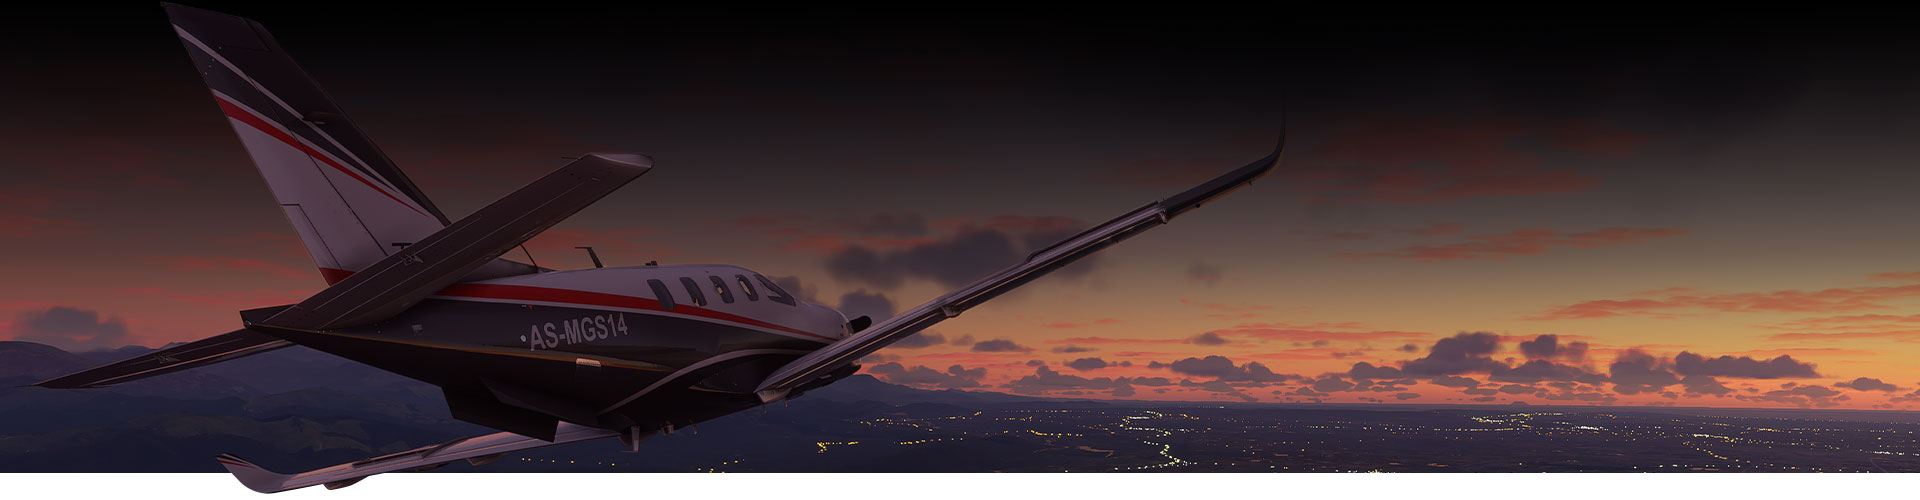 Fly fra Microsoft Flight Simulator som flyr over en by ved solnedgang